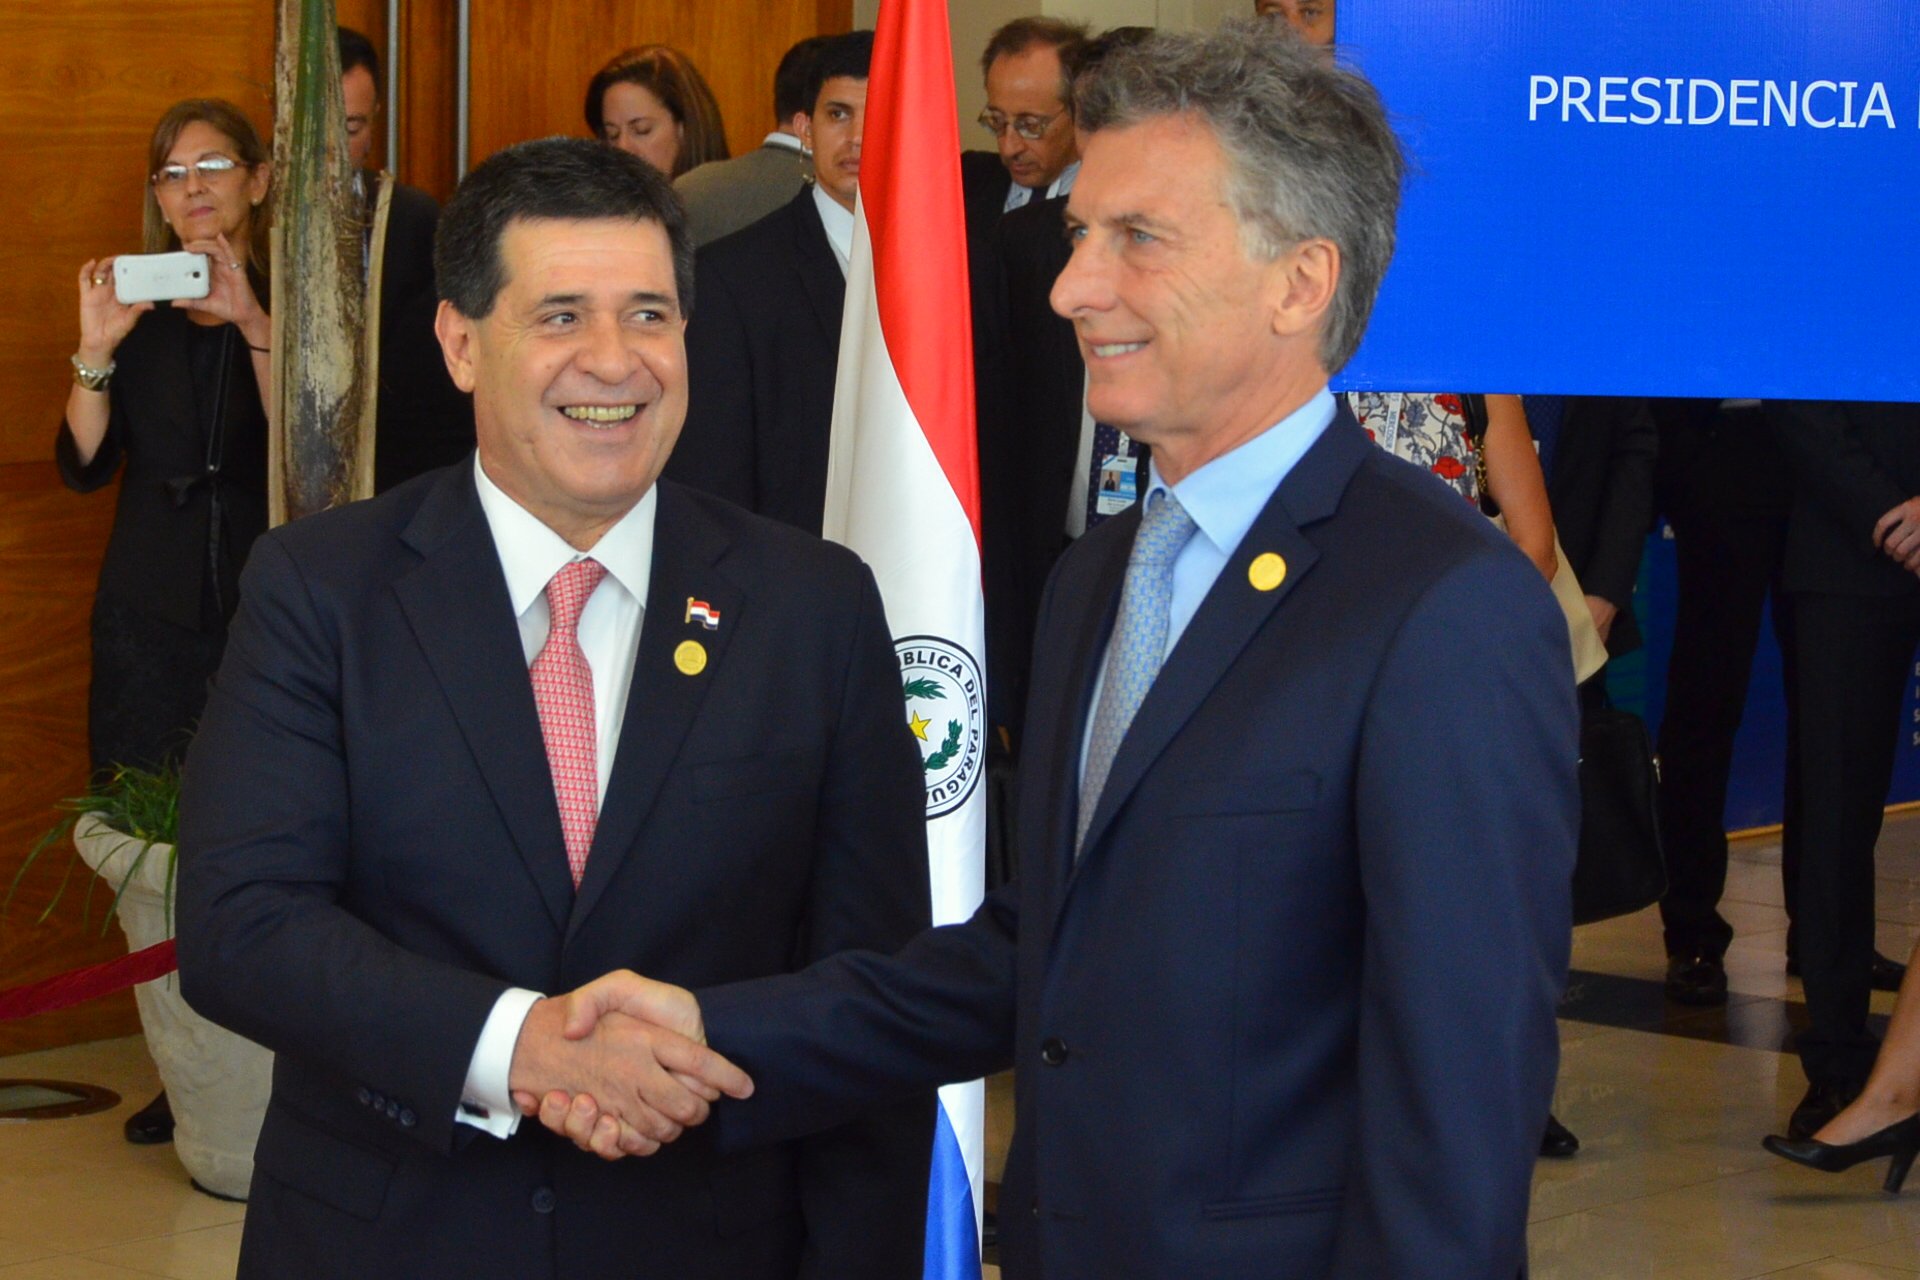 Cartes y Macri iban a tratar temas financieros de Yacyretá